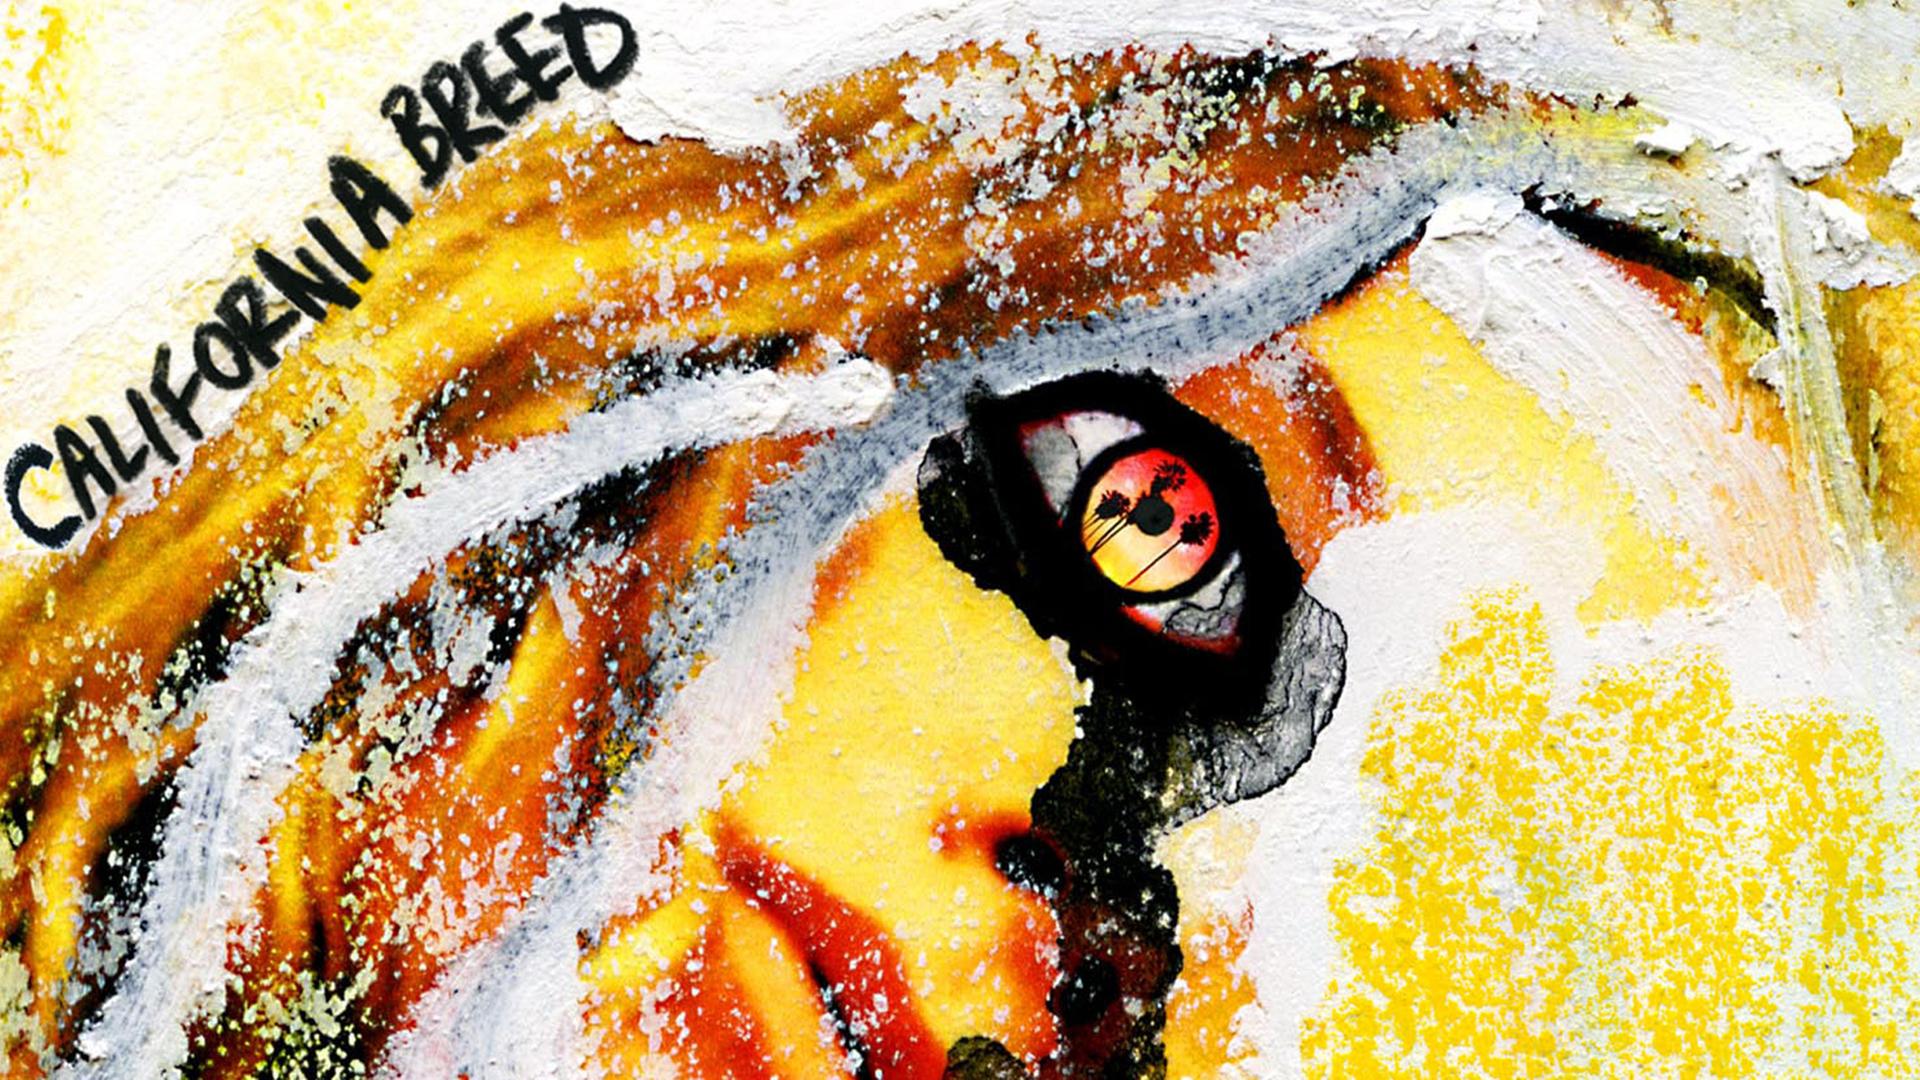 Das Cover der gleichnamigen Band California Breed.